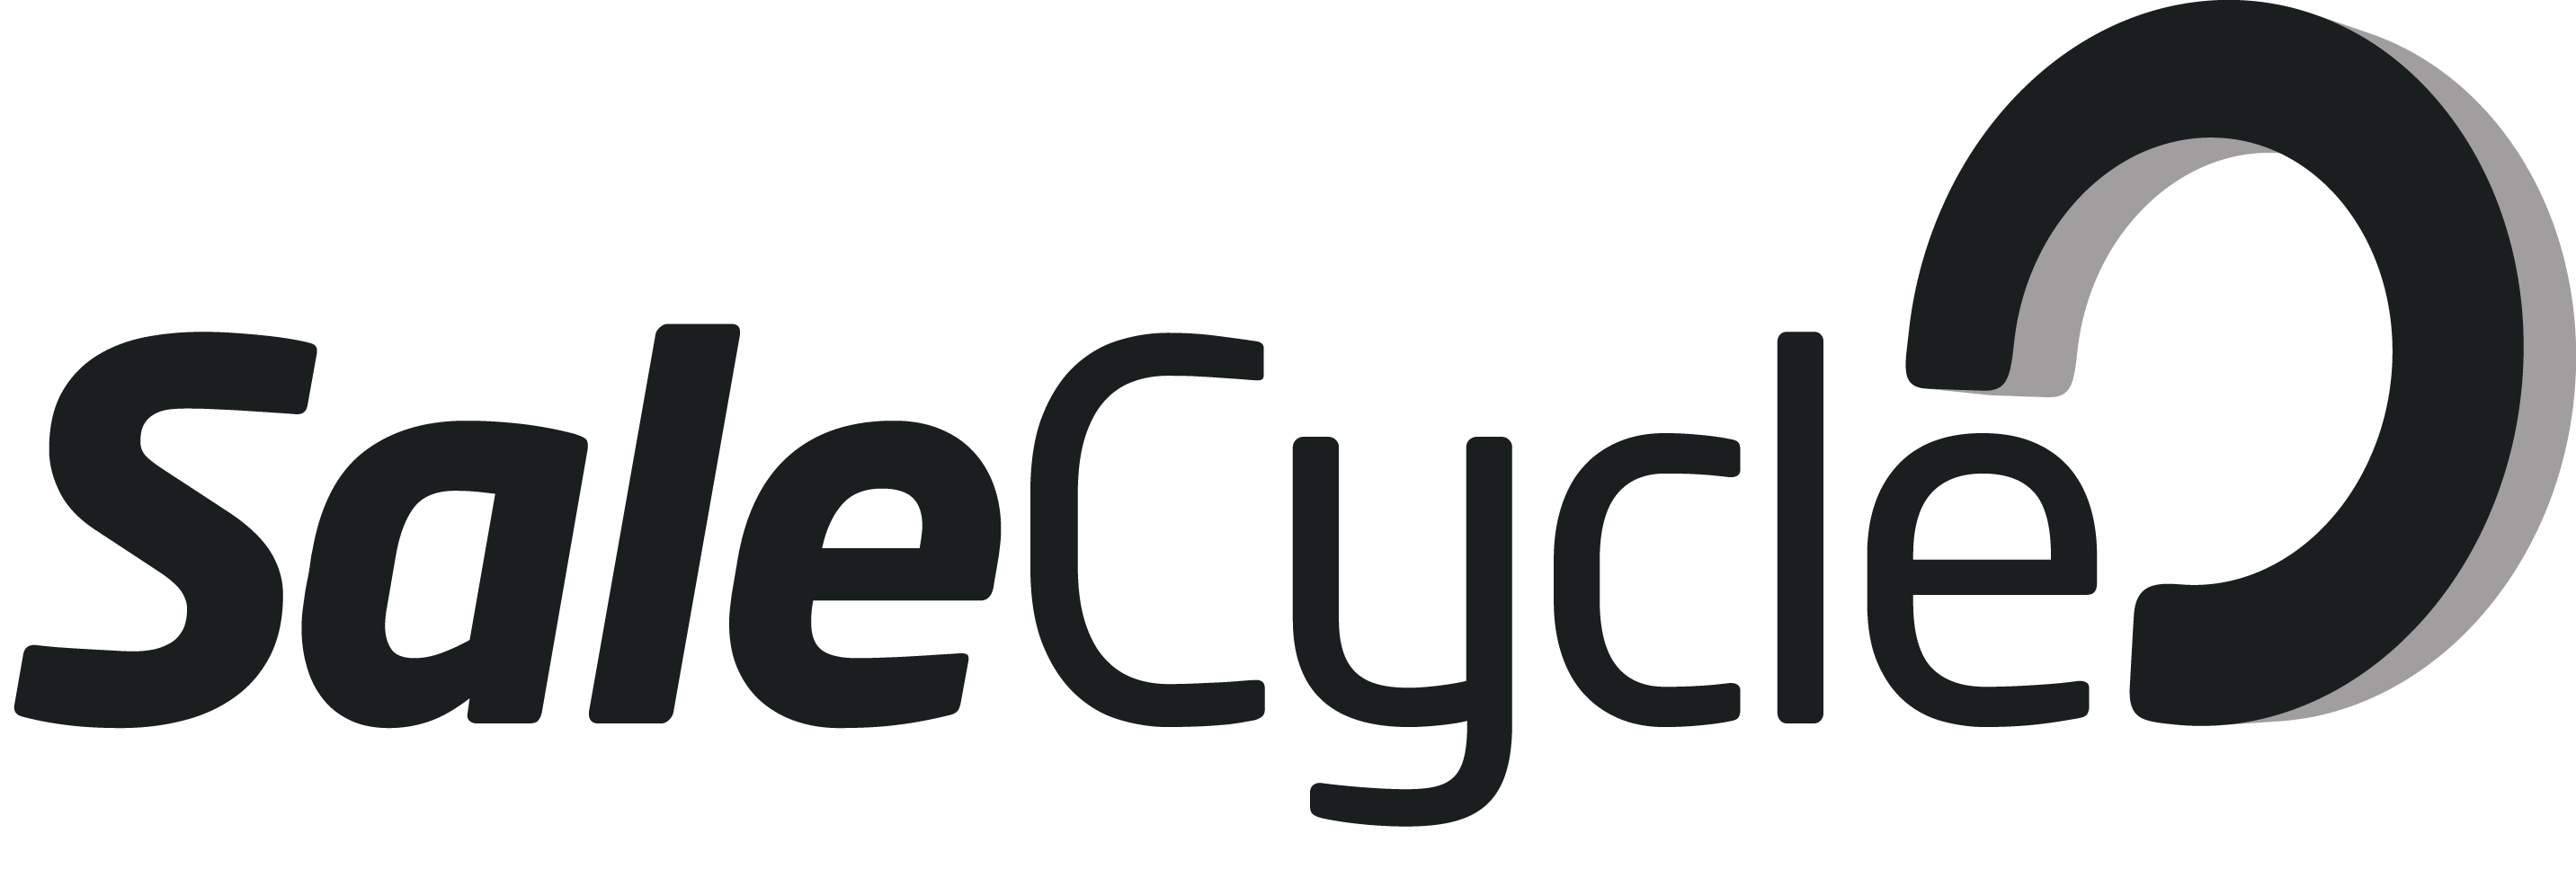 Logotipo de SaleCycle